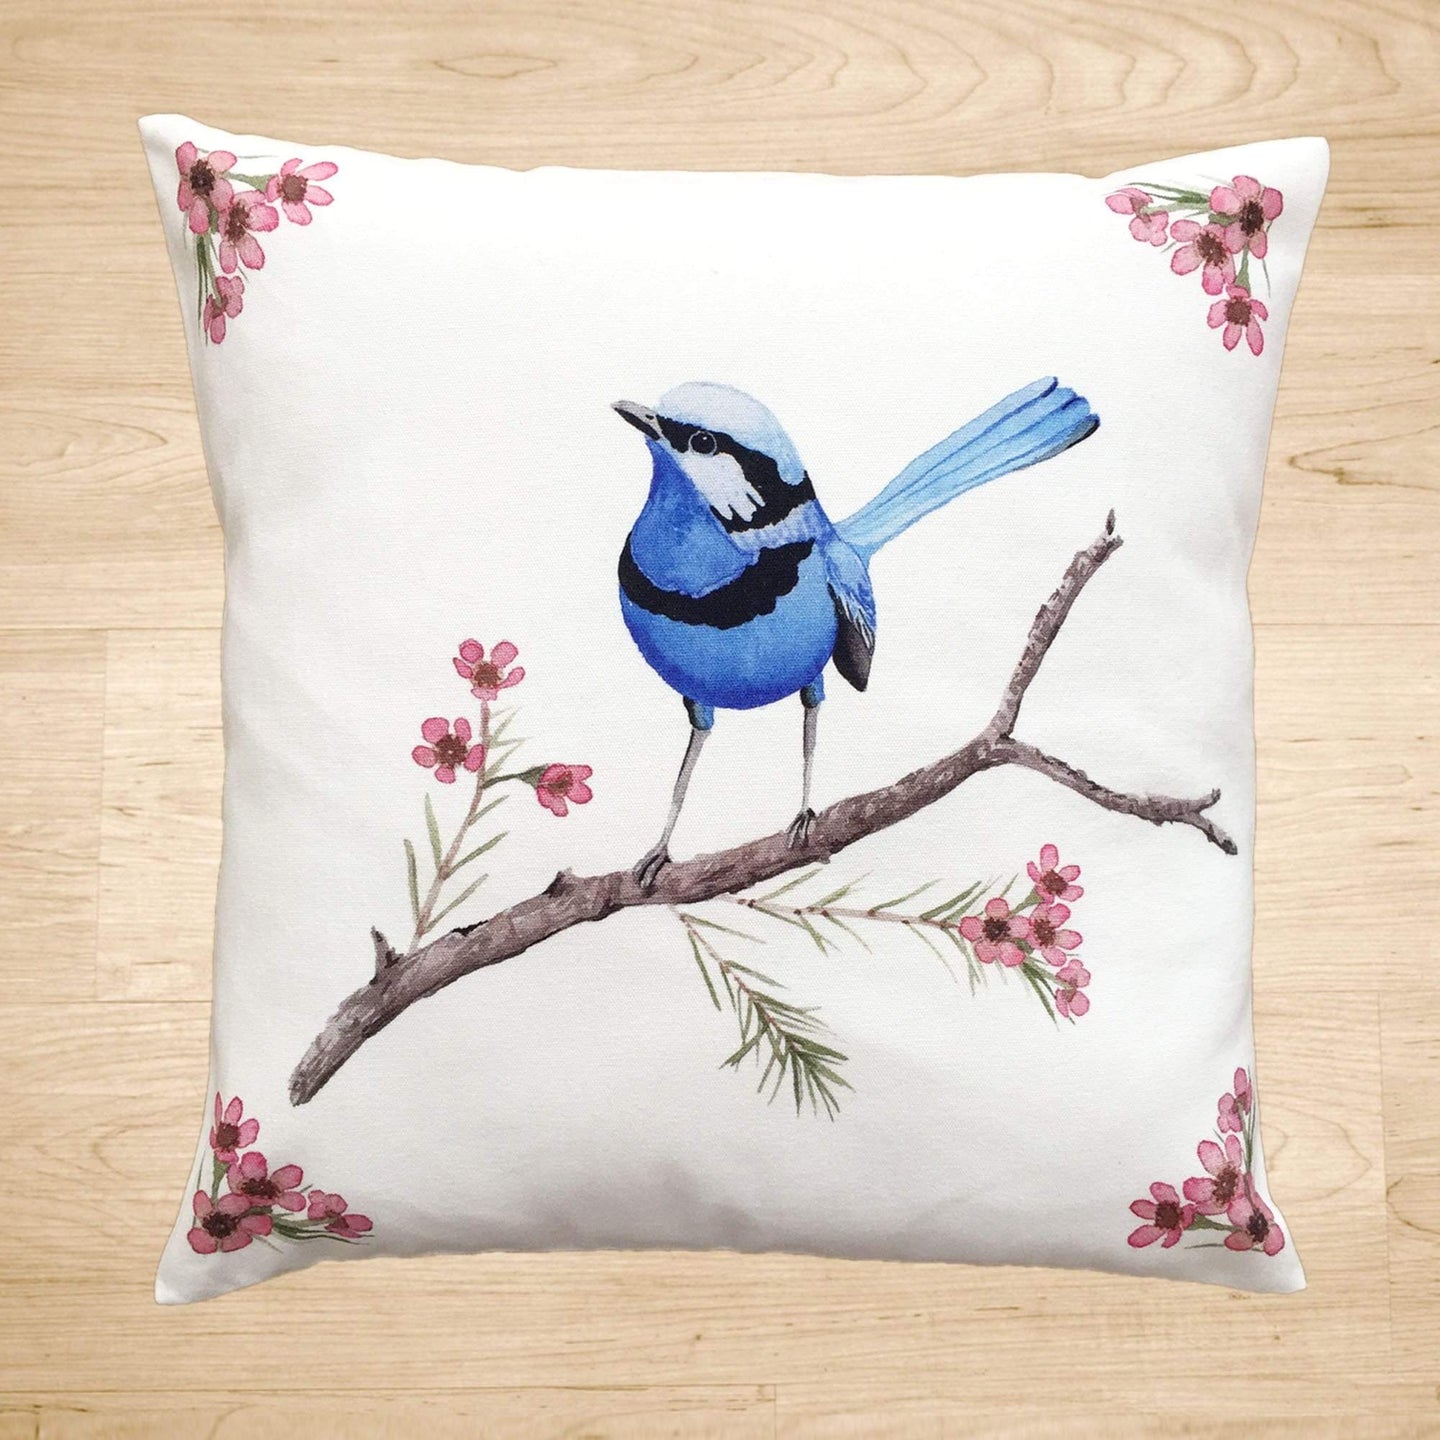 Splendid Blue Wren Cushion Cover Cotton Drill